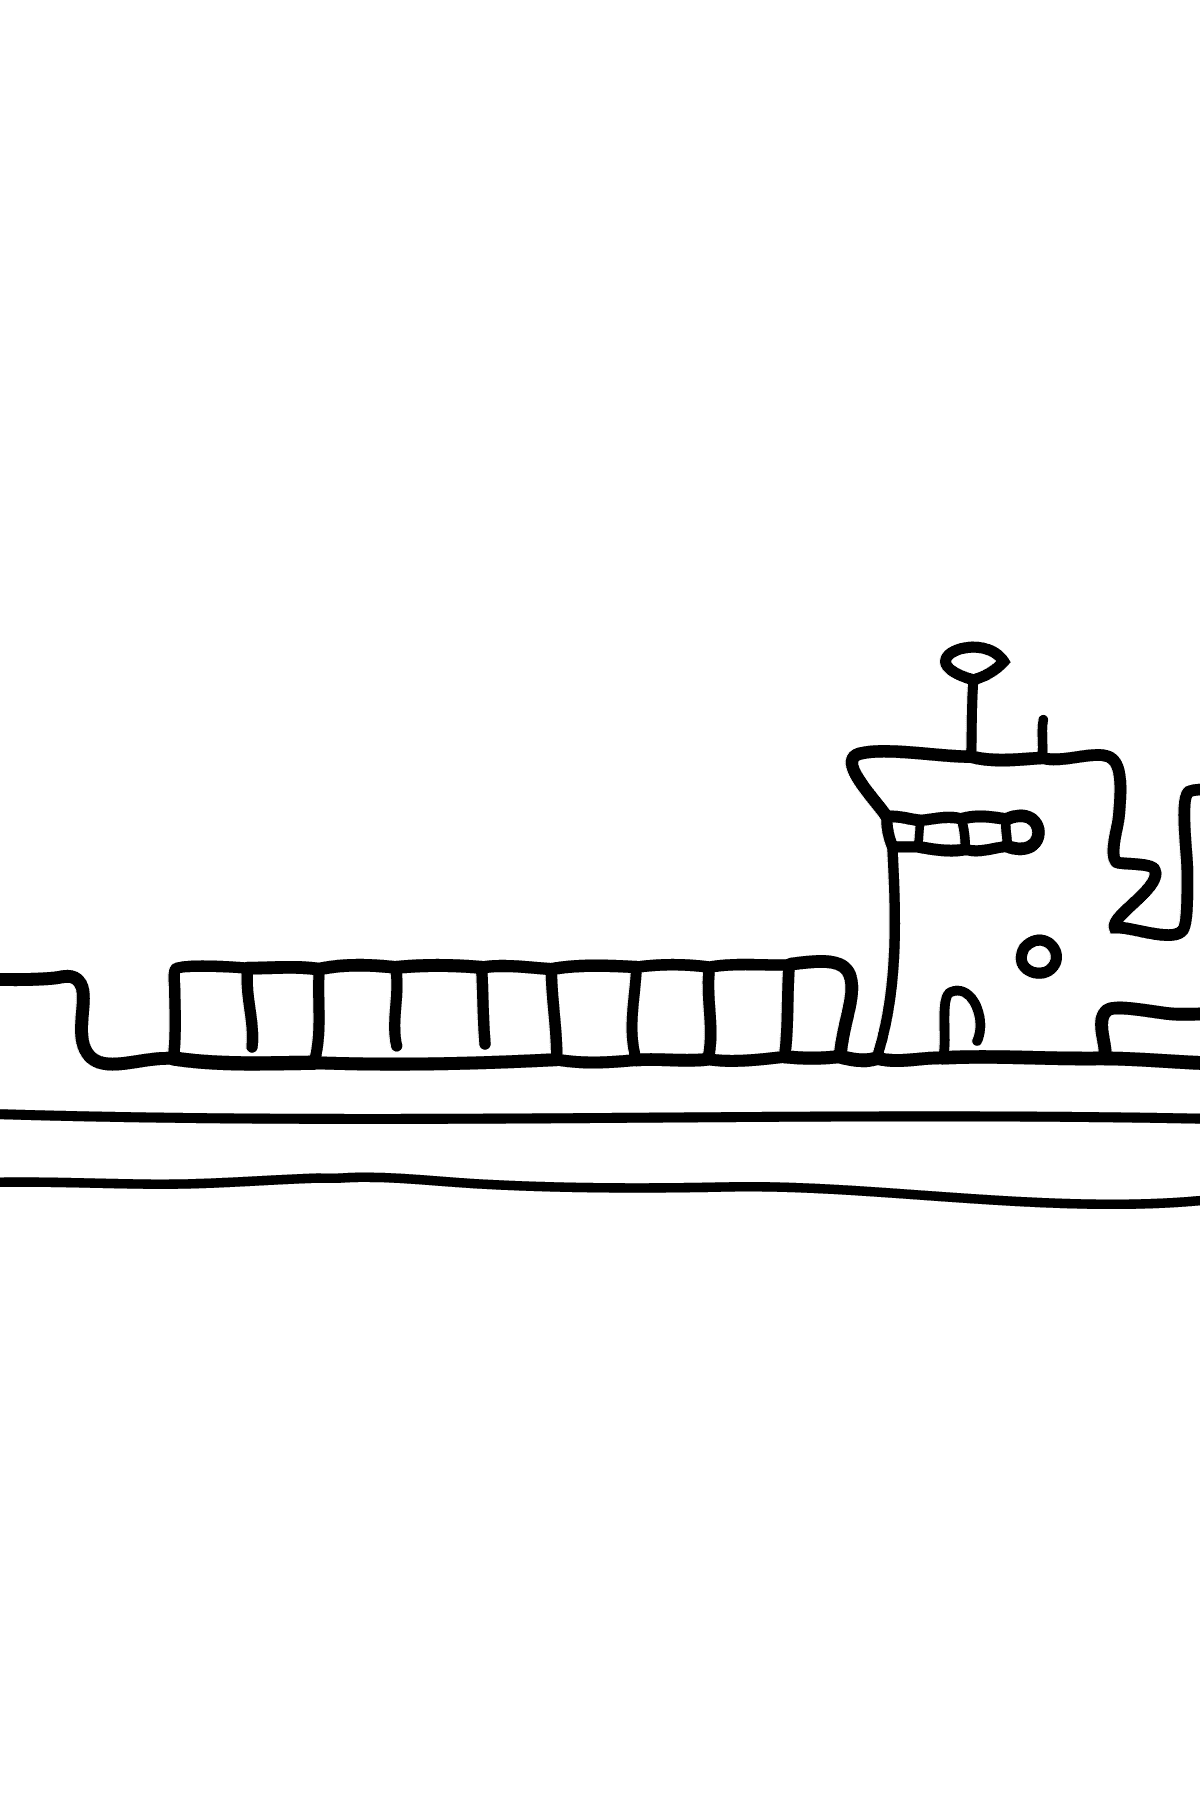 Tegning til fargelegging frakteskip - Tegninger til fargelegging for barn